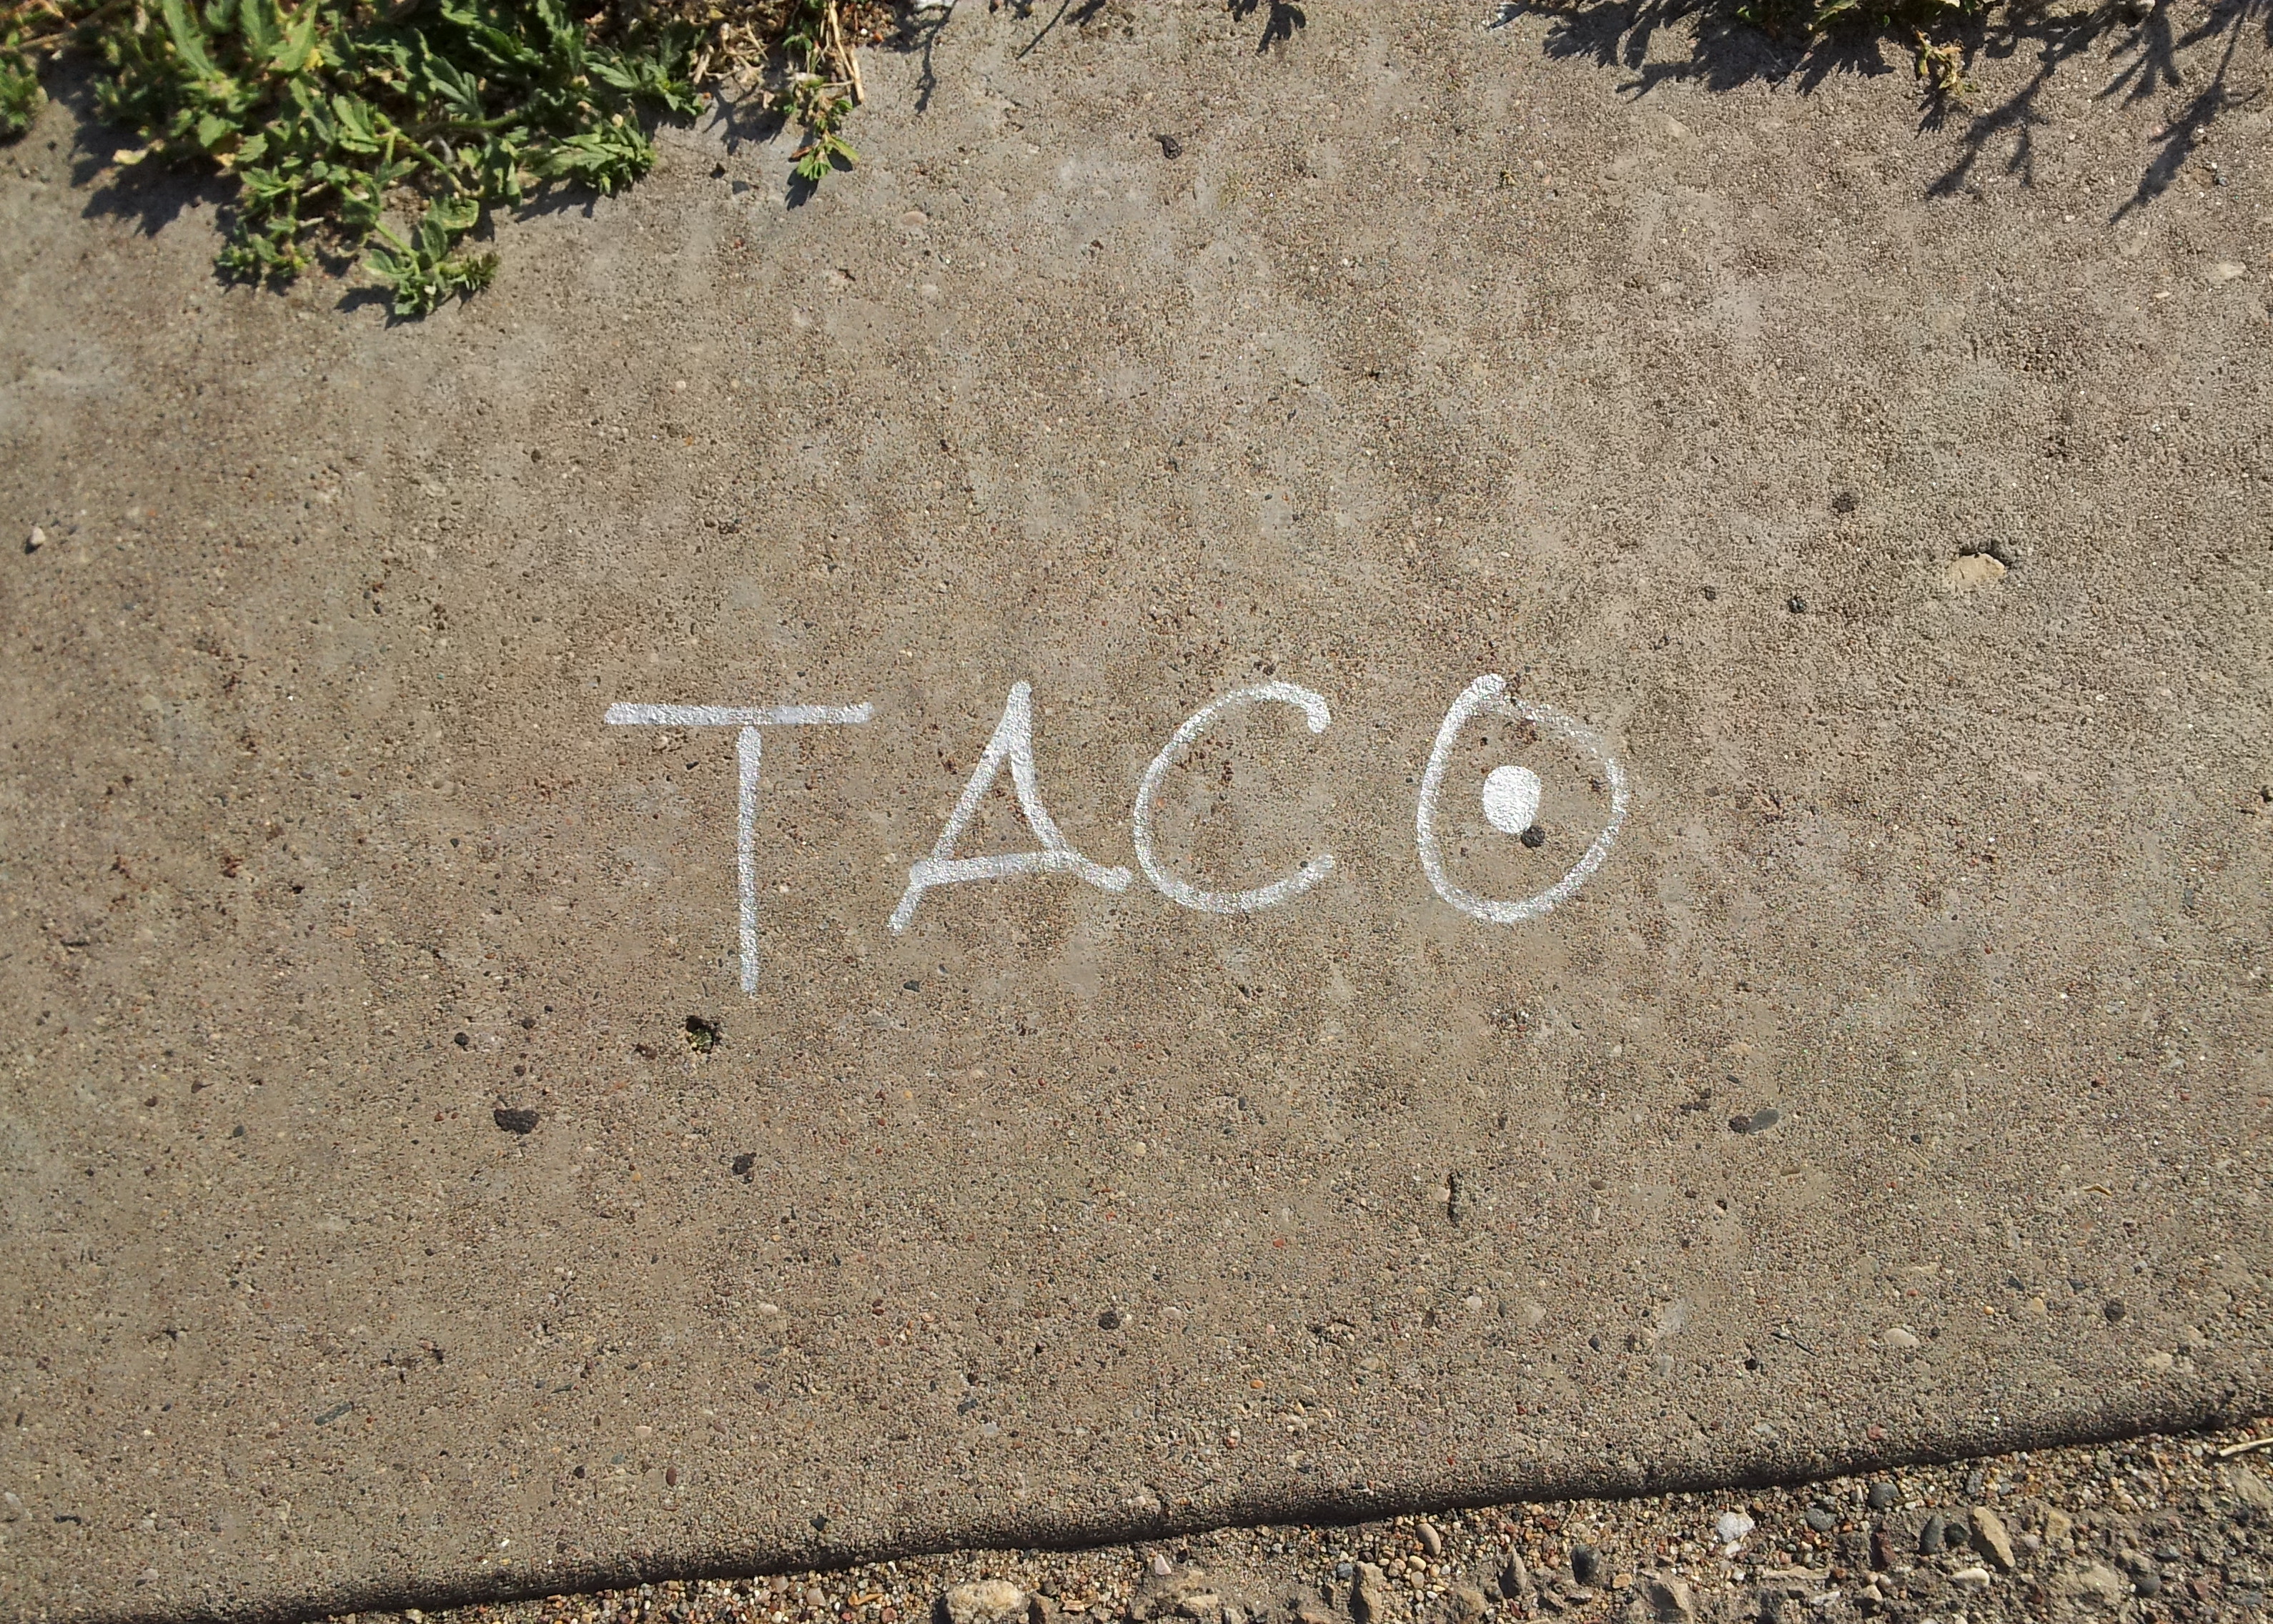 Taco_-_Minneapolis%2C_MN_-_panoramio.jpg